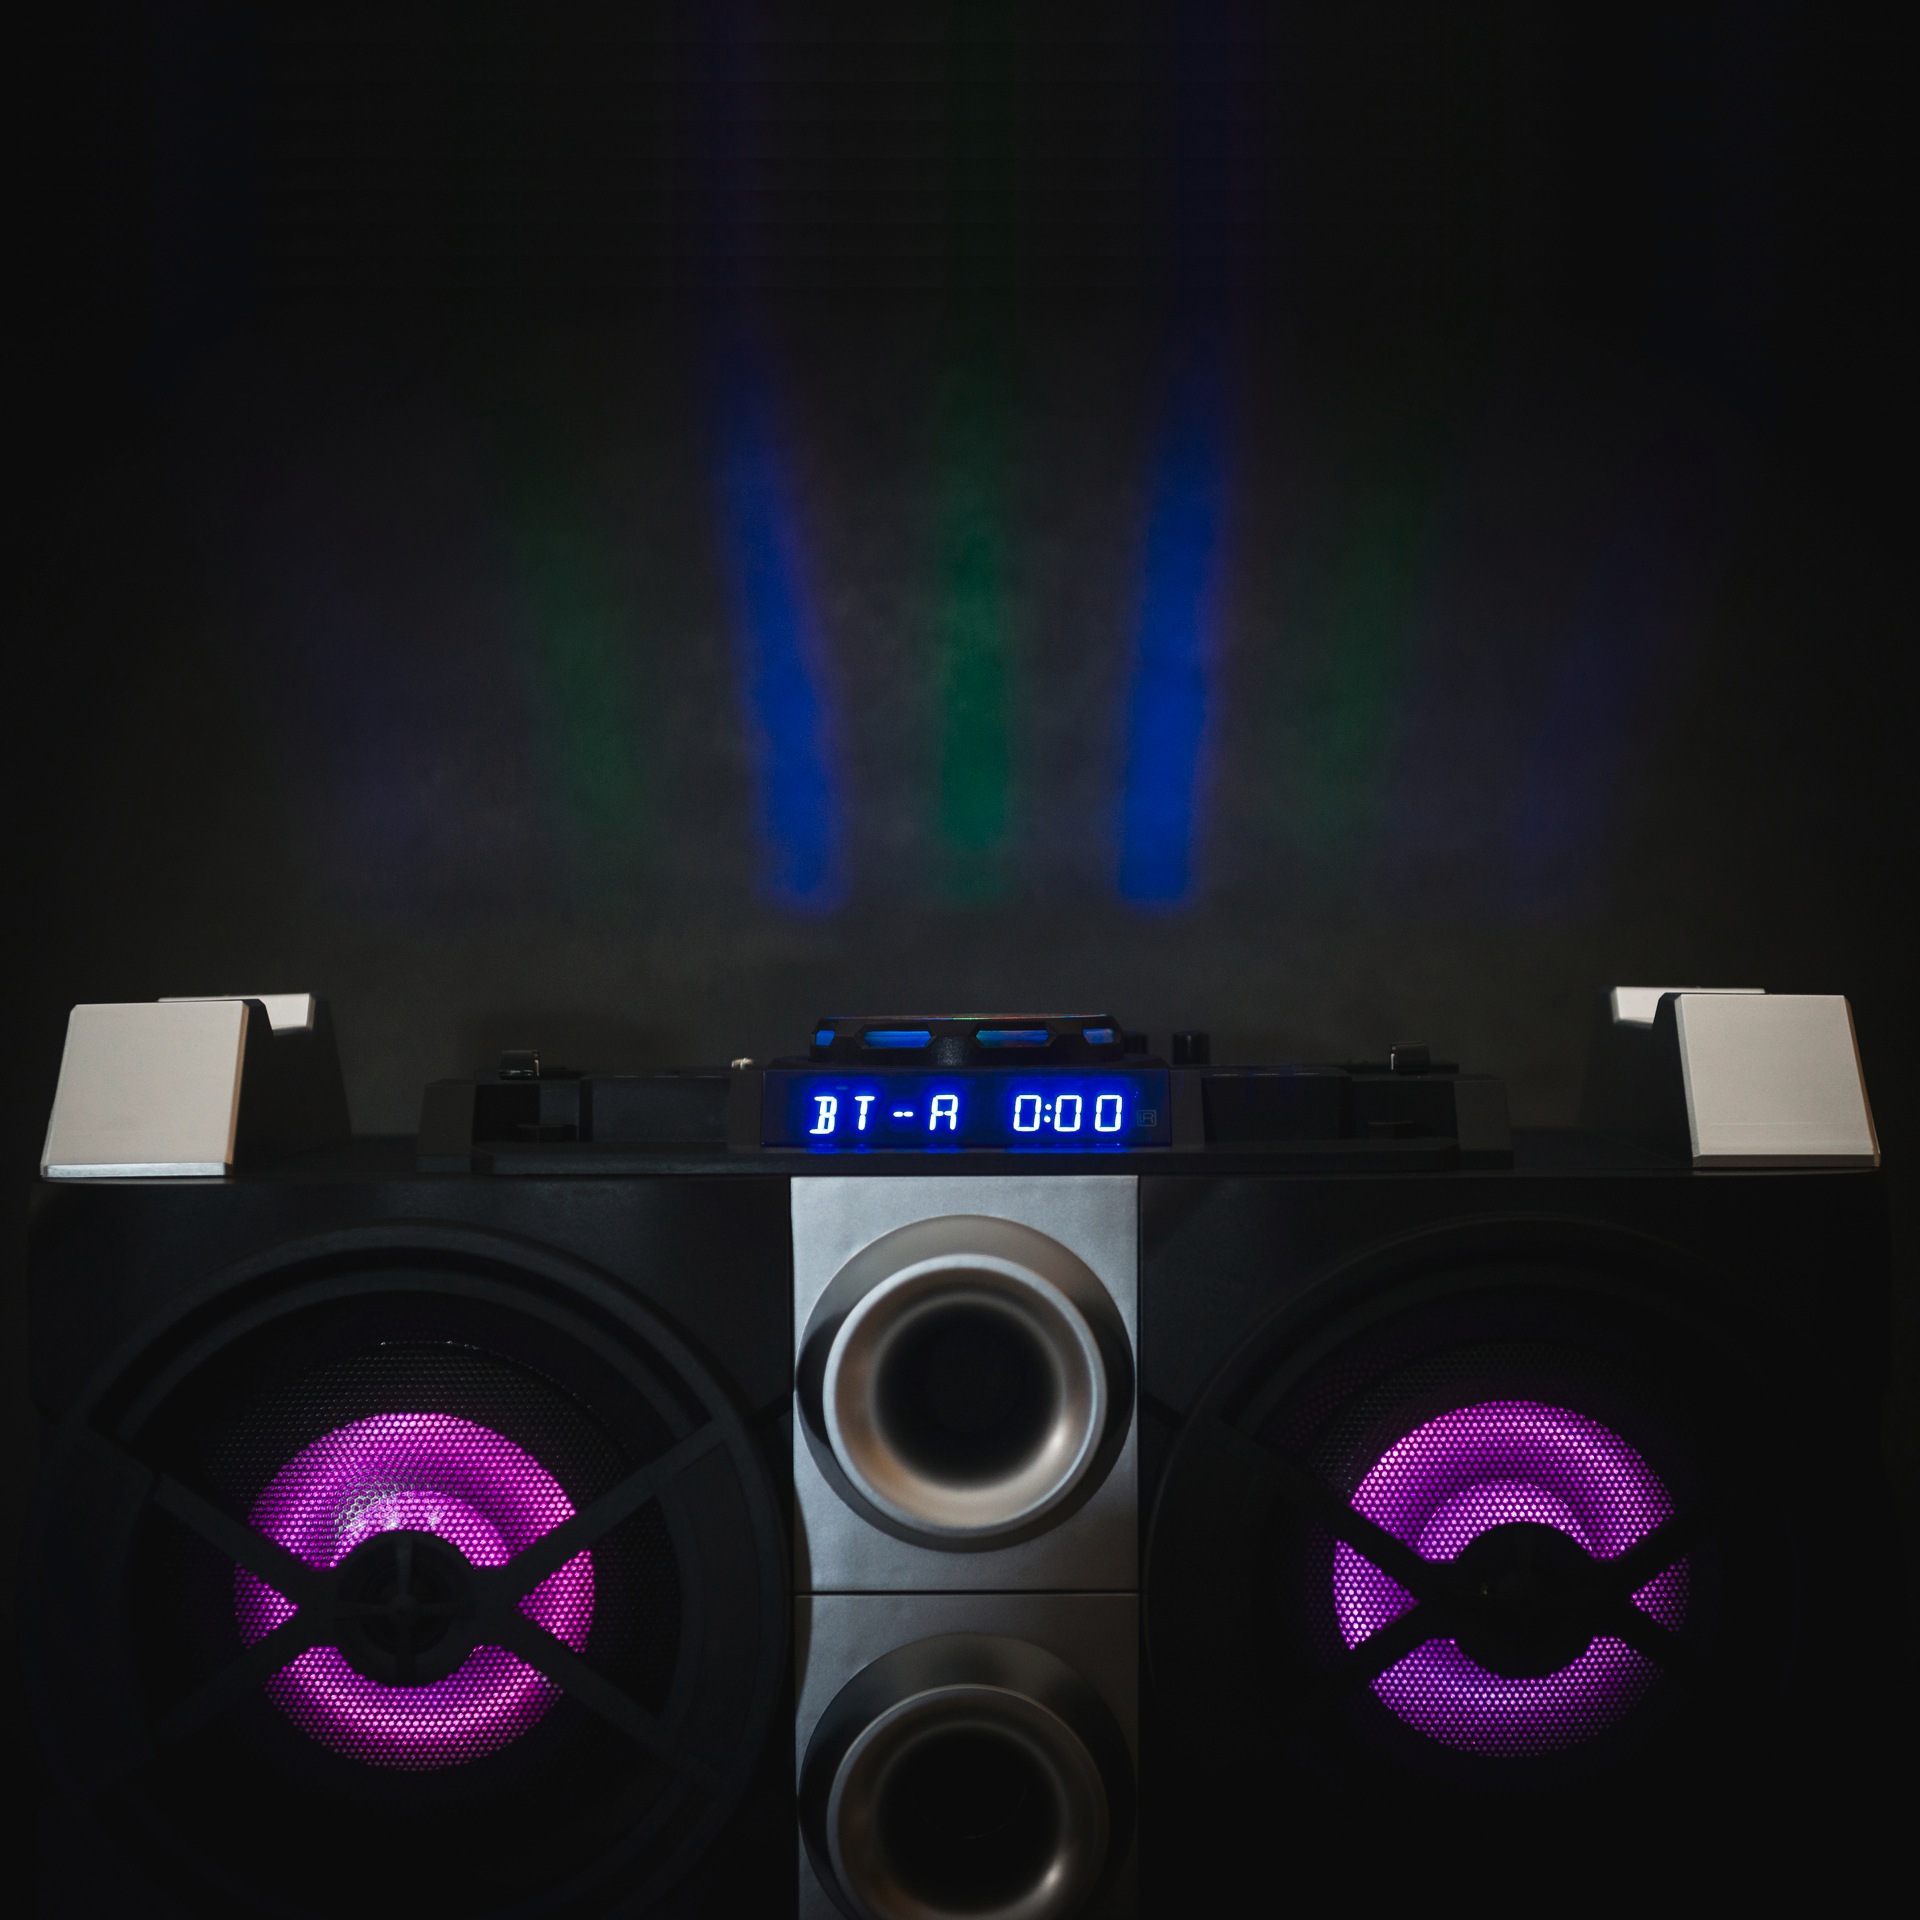 DJ bei Party-Lautsprecher (1 St.) und Party-Lautsprecher Lenco kaufen »PMX-150 OTTO Mixfunktion«, jetzt +